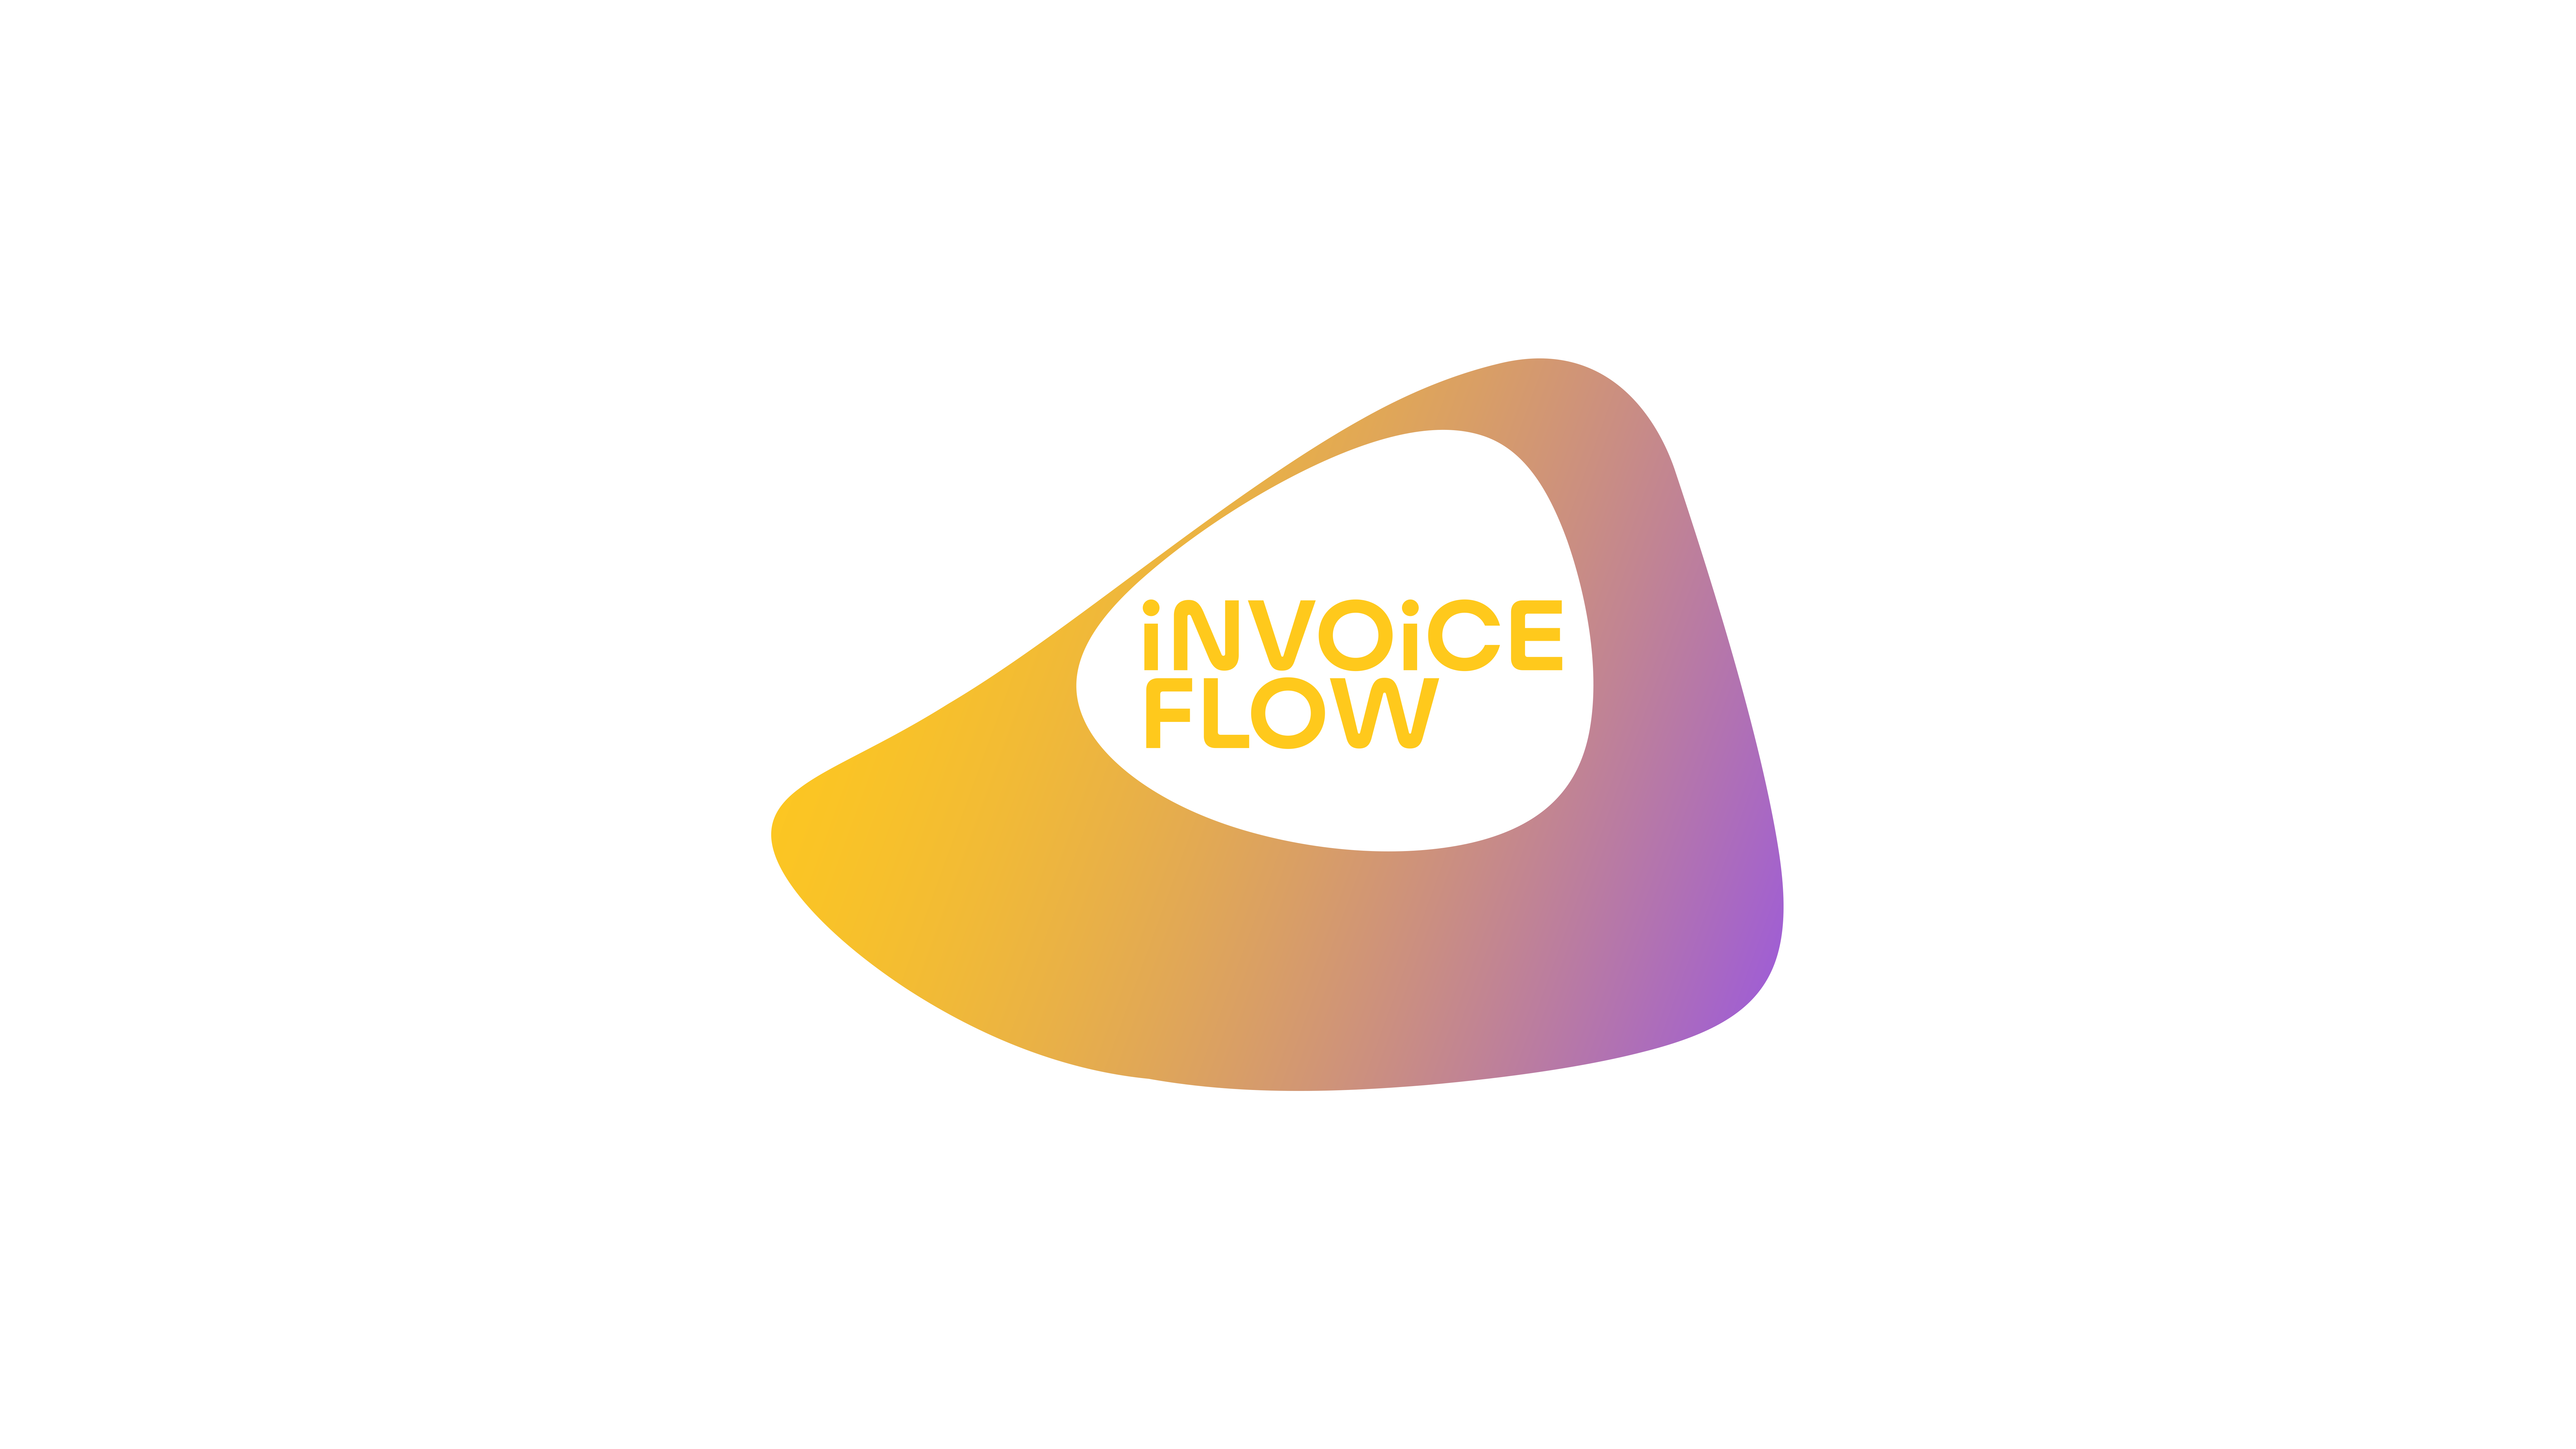 iNVOiCE FLOW